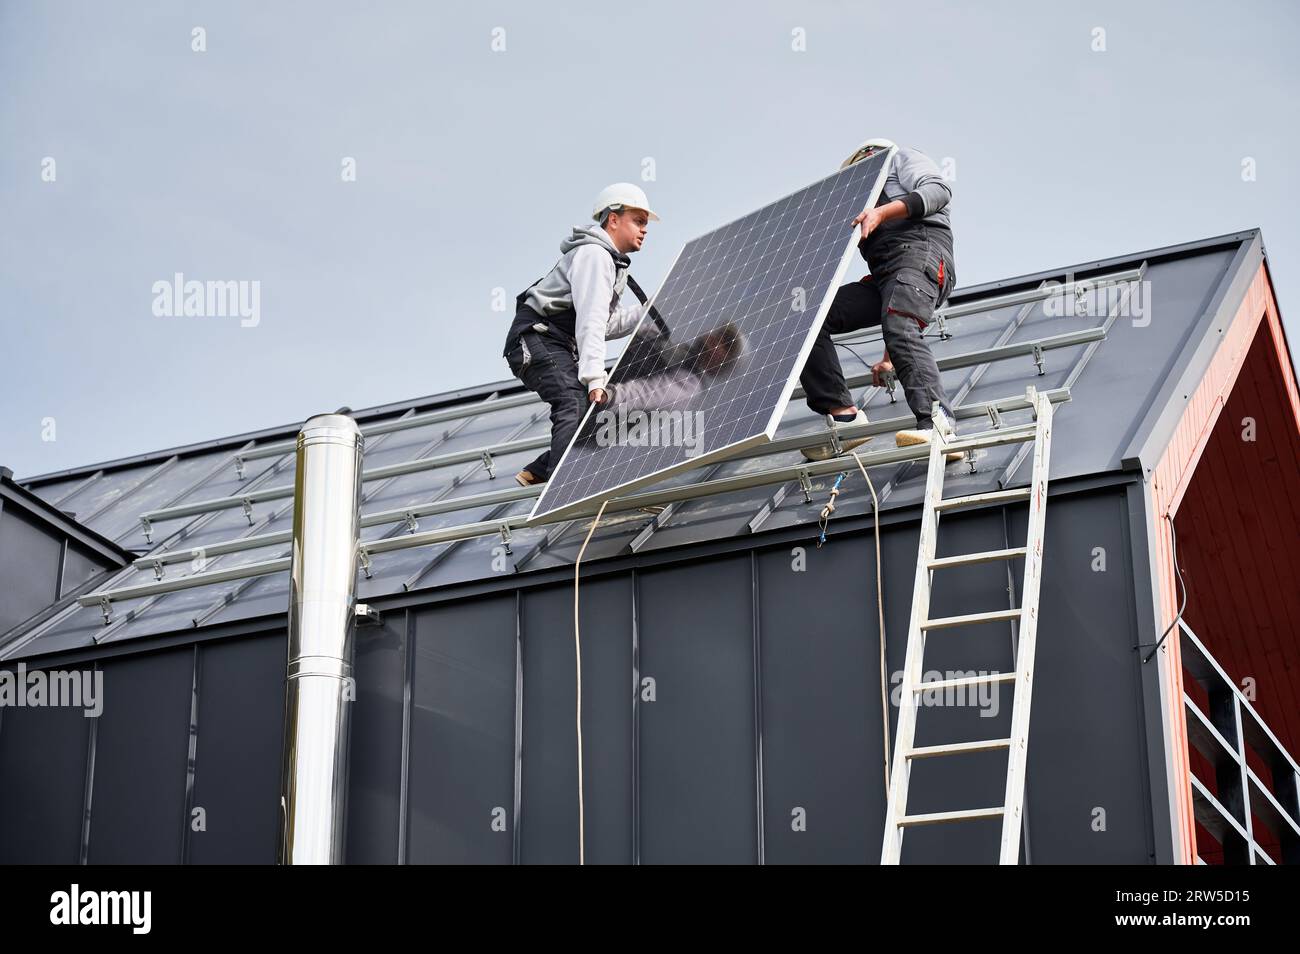 Installateurs installant le système de panneau solaire sur le toit de la maison. Hommes travailleurs dans des casques portant le module solaire photovoltaïque à l'extérieur. Concept d'énergie alternative et renouvelable. Banque D'Images